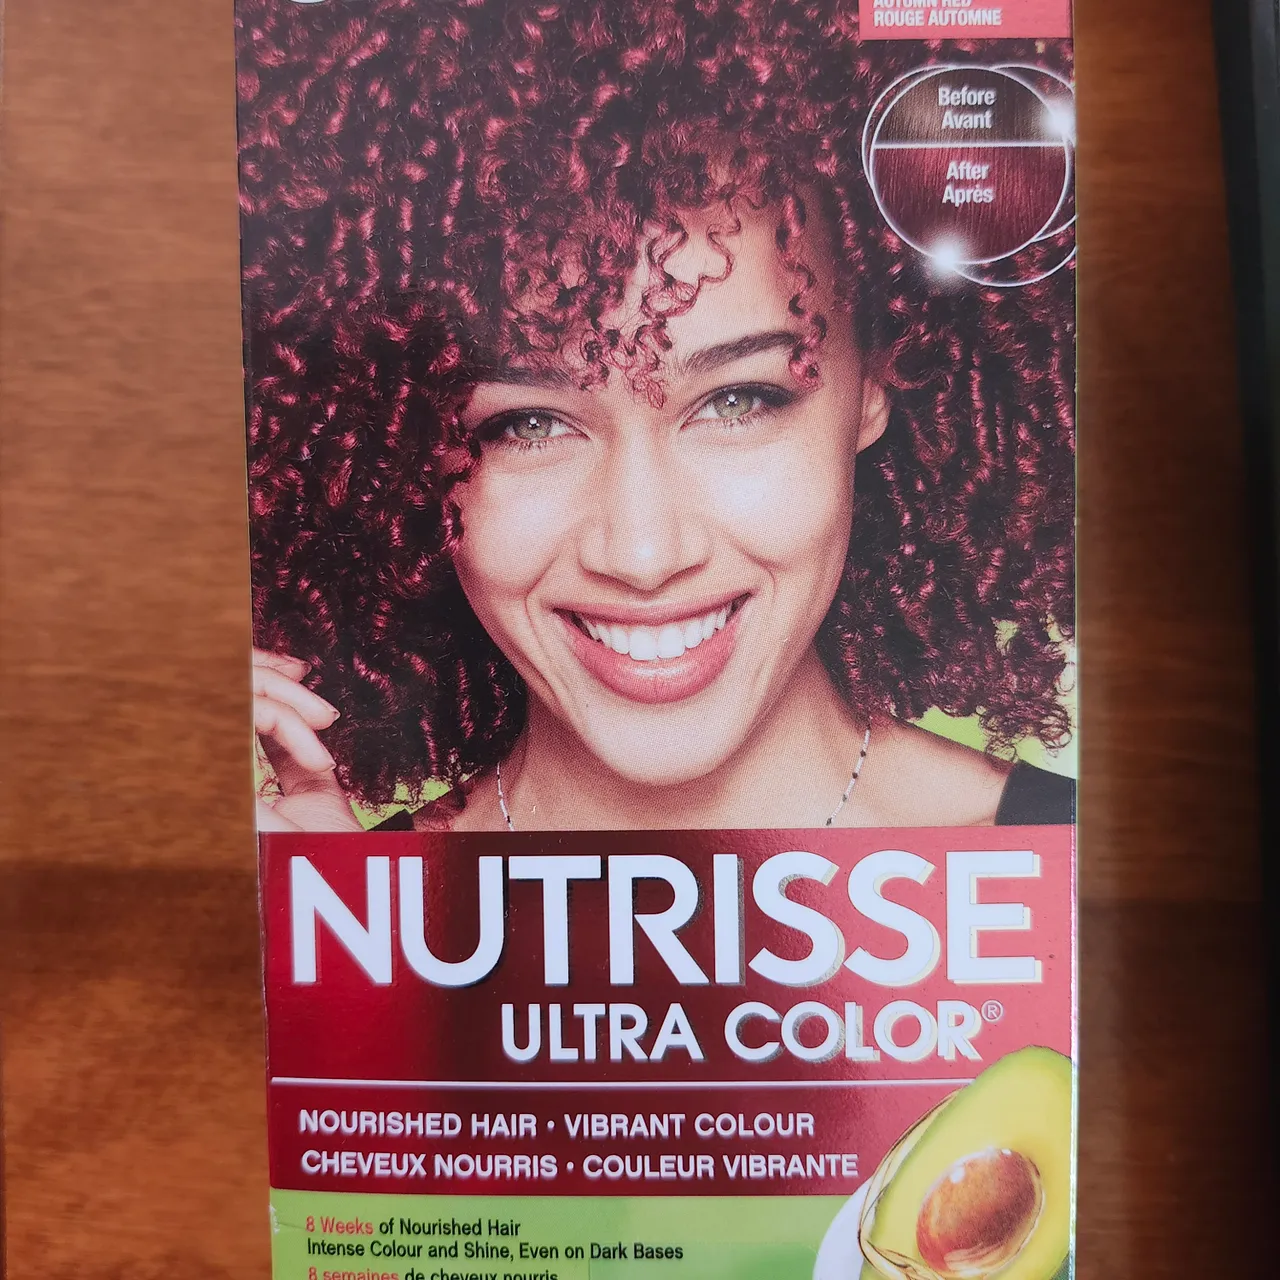 Garnier Nutrisse ultra color photo 1